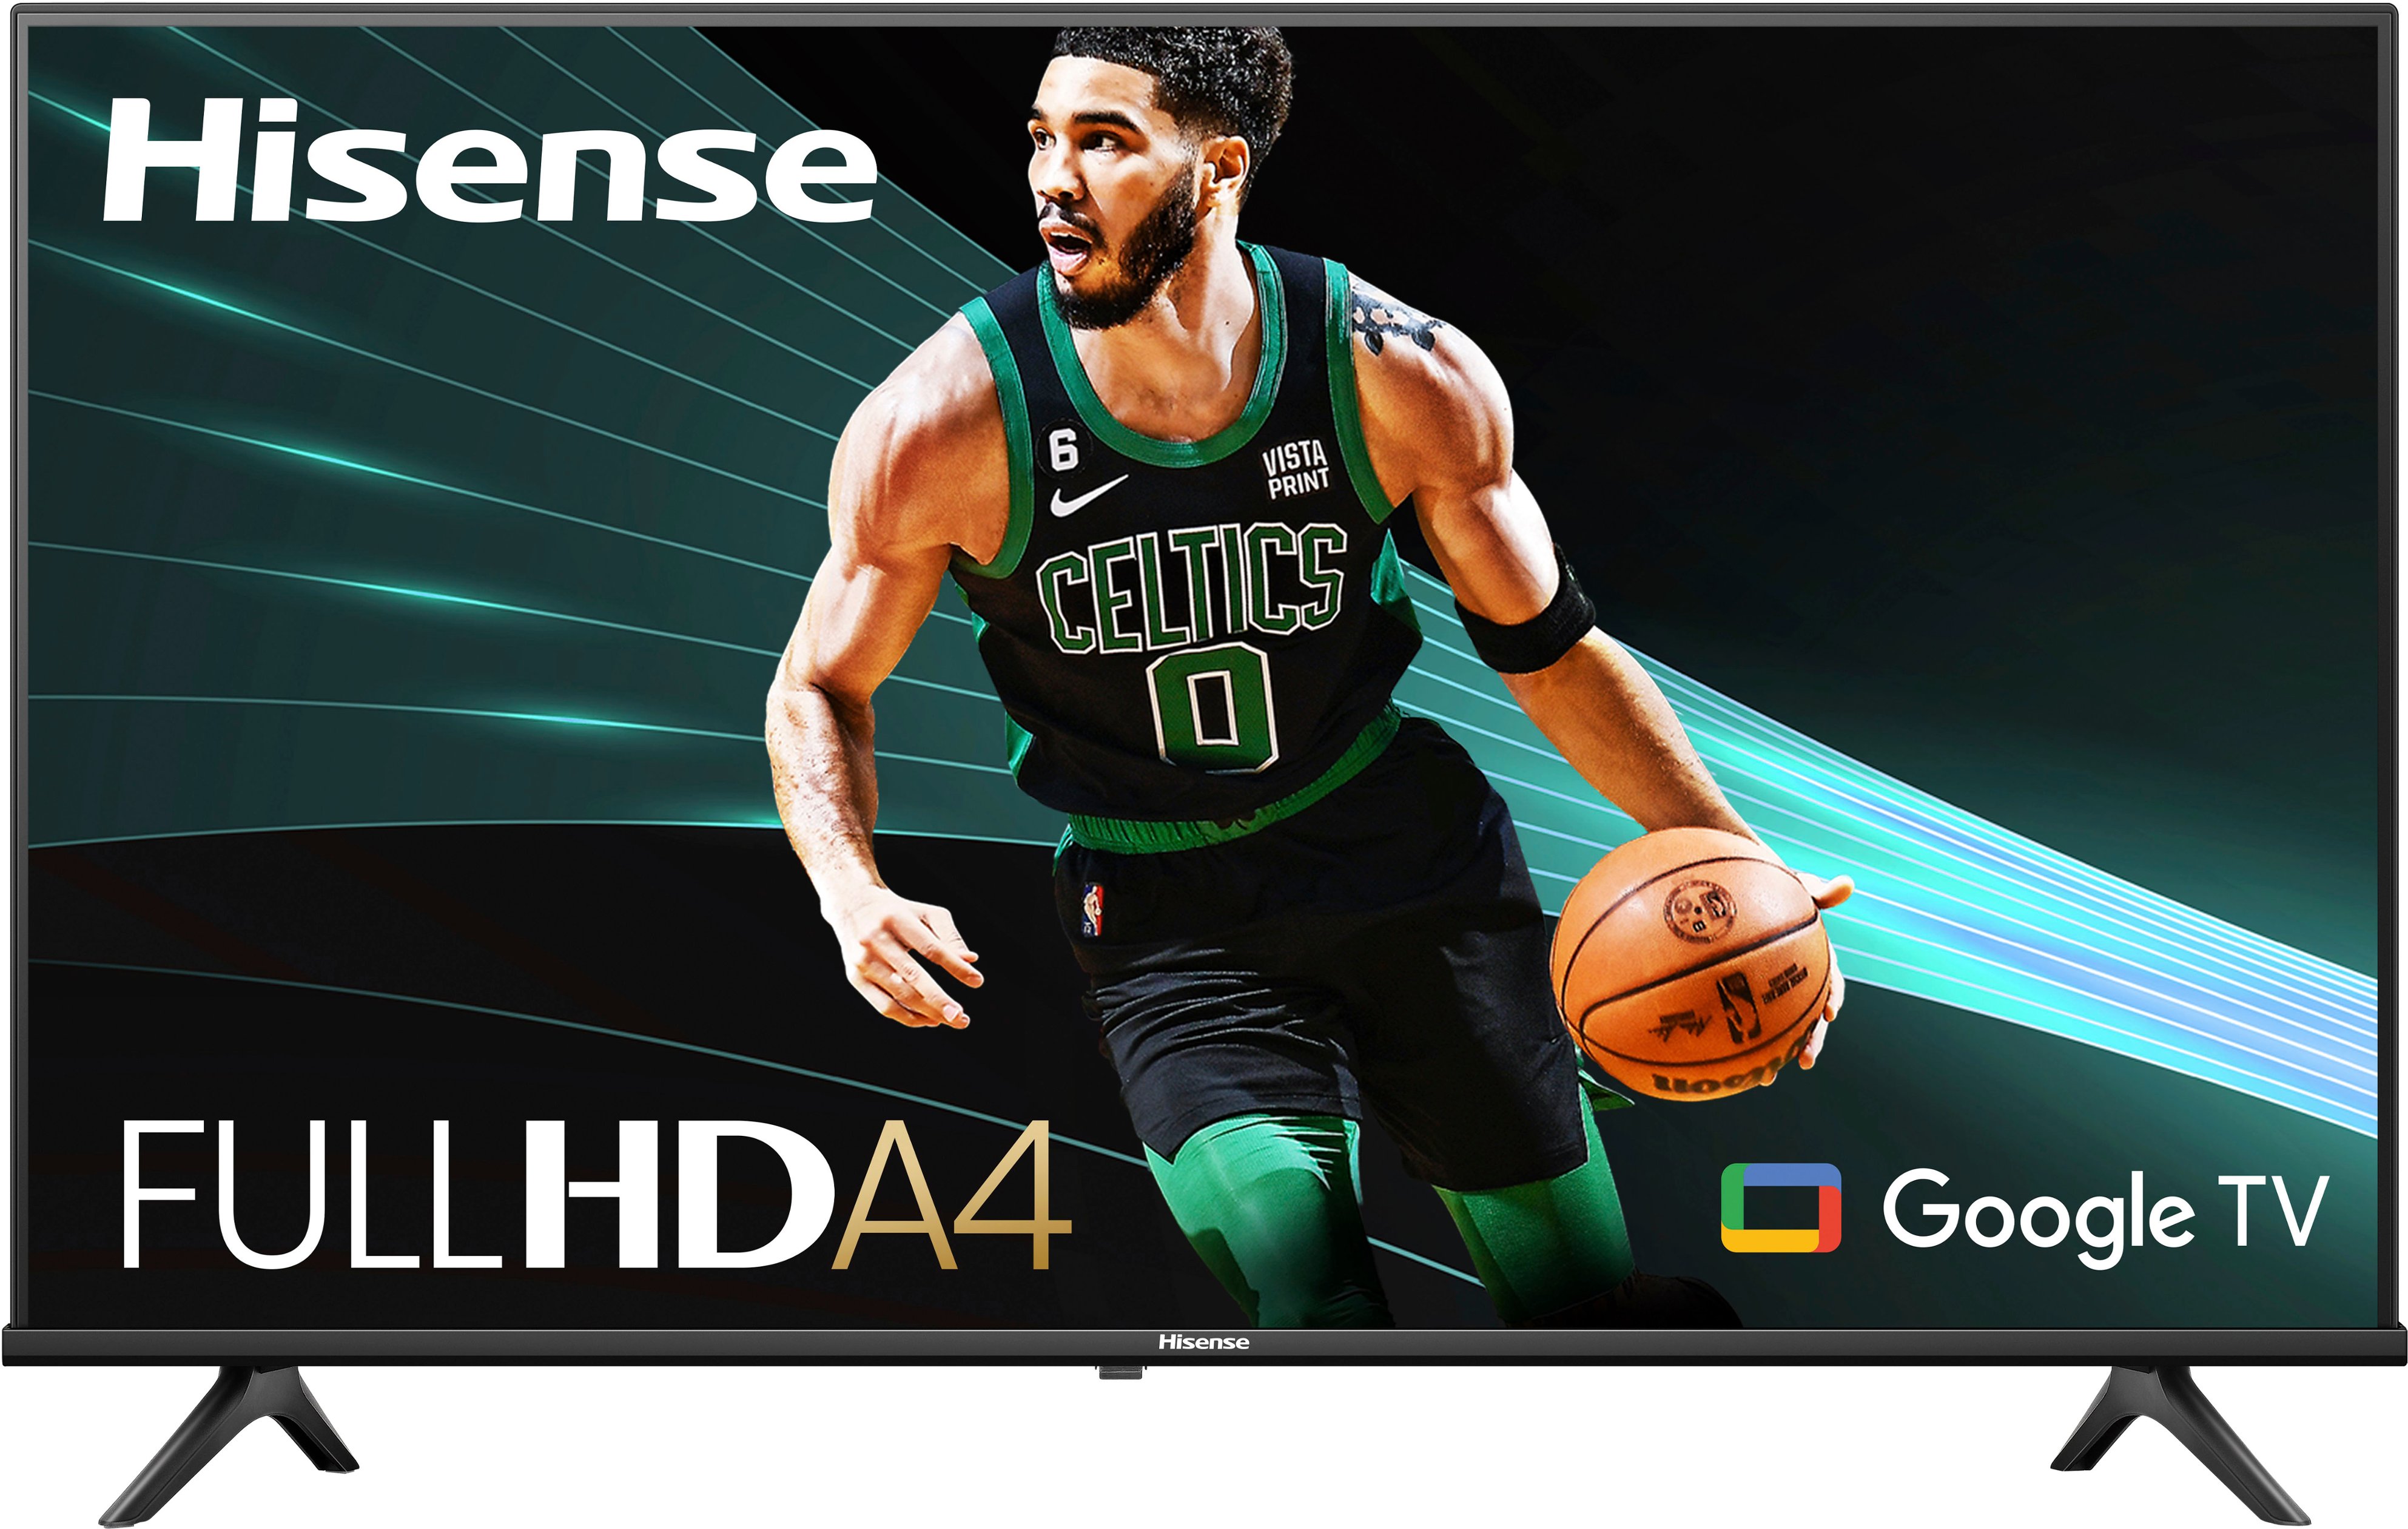 Pantalla Smart TV Hisense LED de 32 pulgadas HD 32A45KV con Vidaa